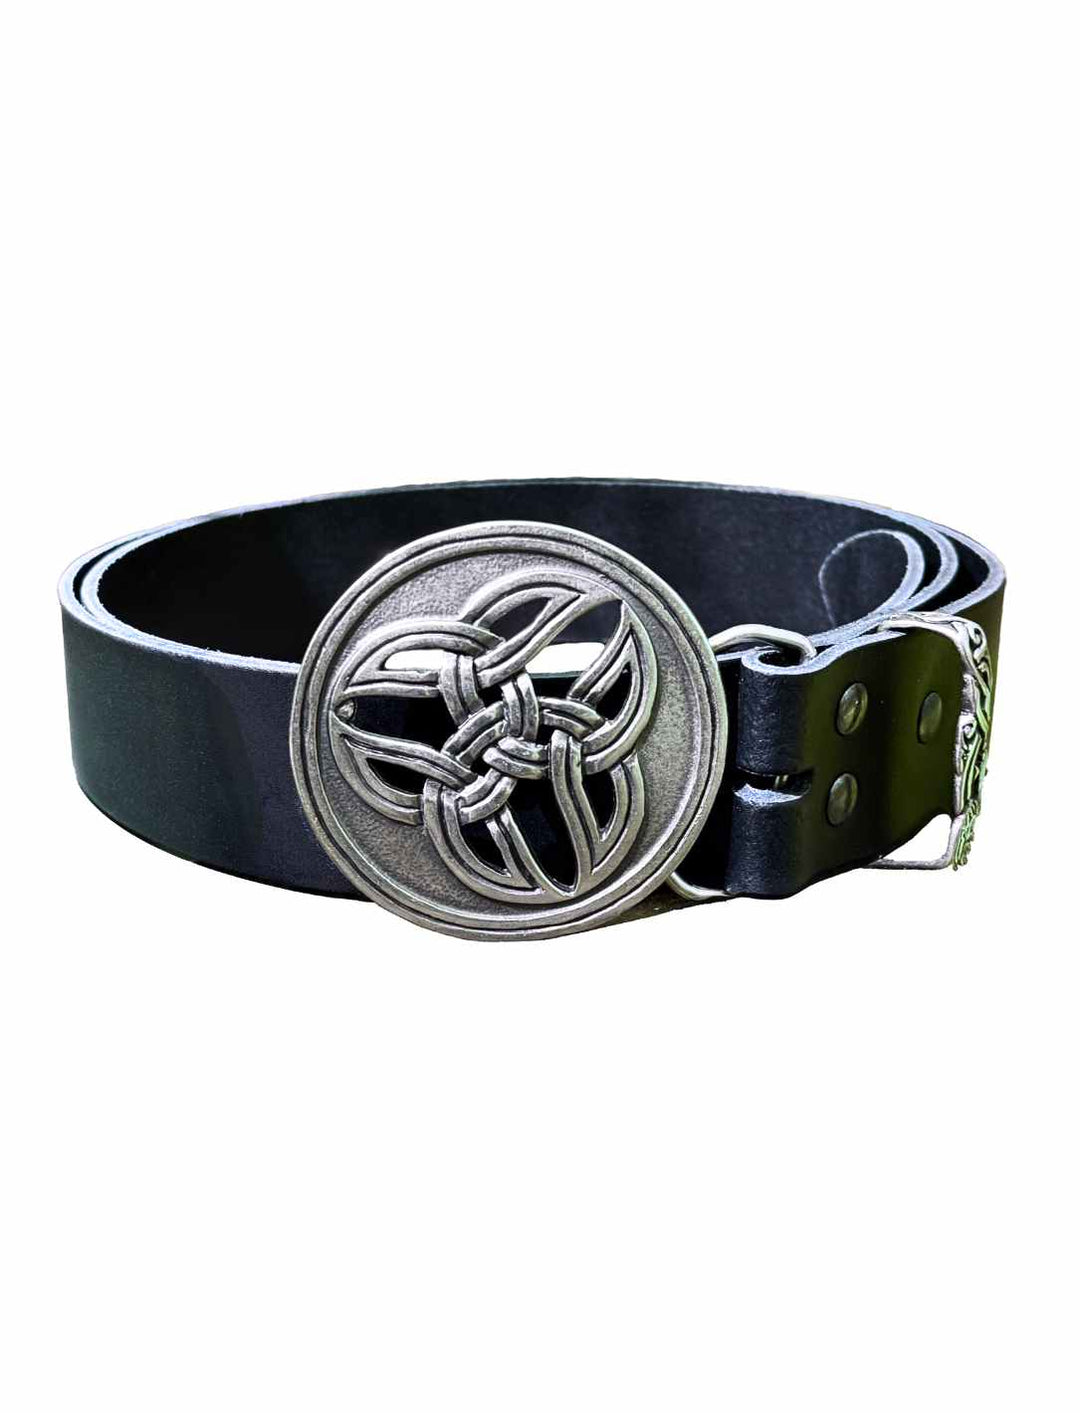 Circle of Life Ledergürtel auf weißem Hintergrund – Eleganter schwarzer Leder-Gürtel mit silberfarbener keltischer Triade-Schnalle, der traditionelle Eleganz und zeitlose Bedeutung vereint.